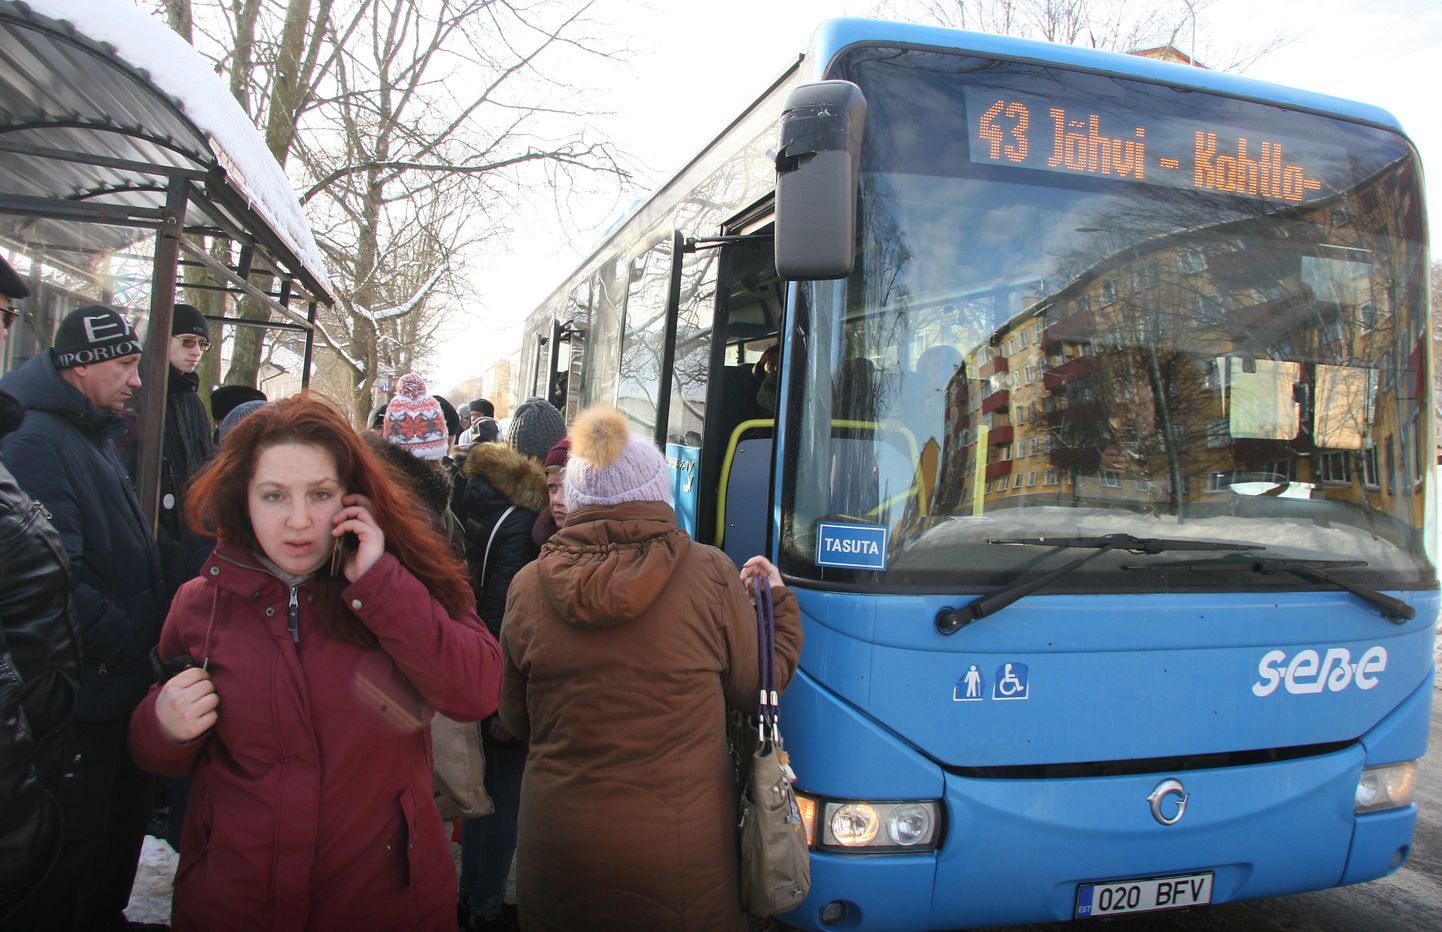 На маршруте №43 больше всего пассажиров садится и выходит в Кохтла-Ярве на остановке "Kalevi".